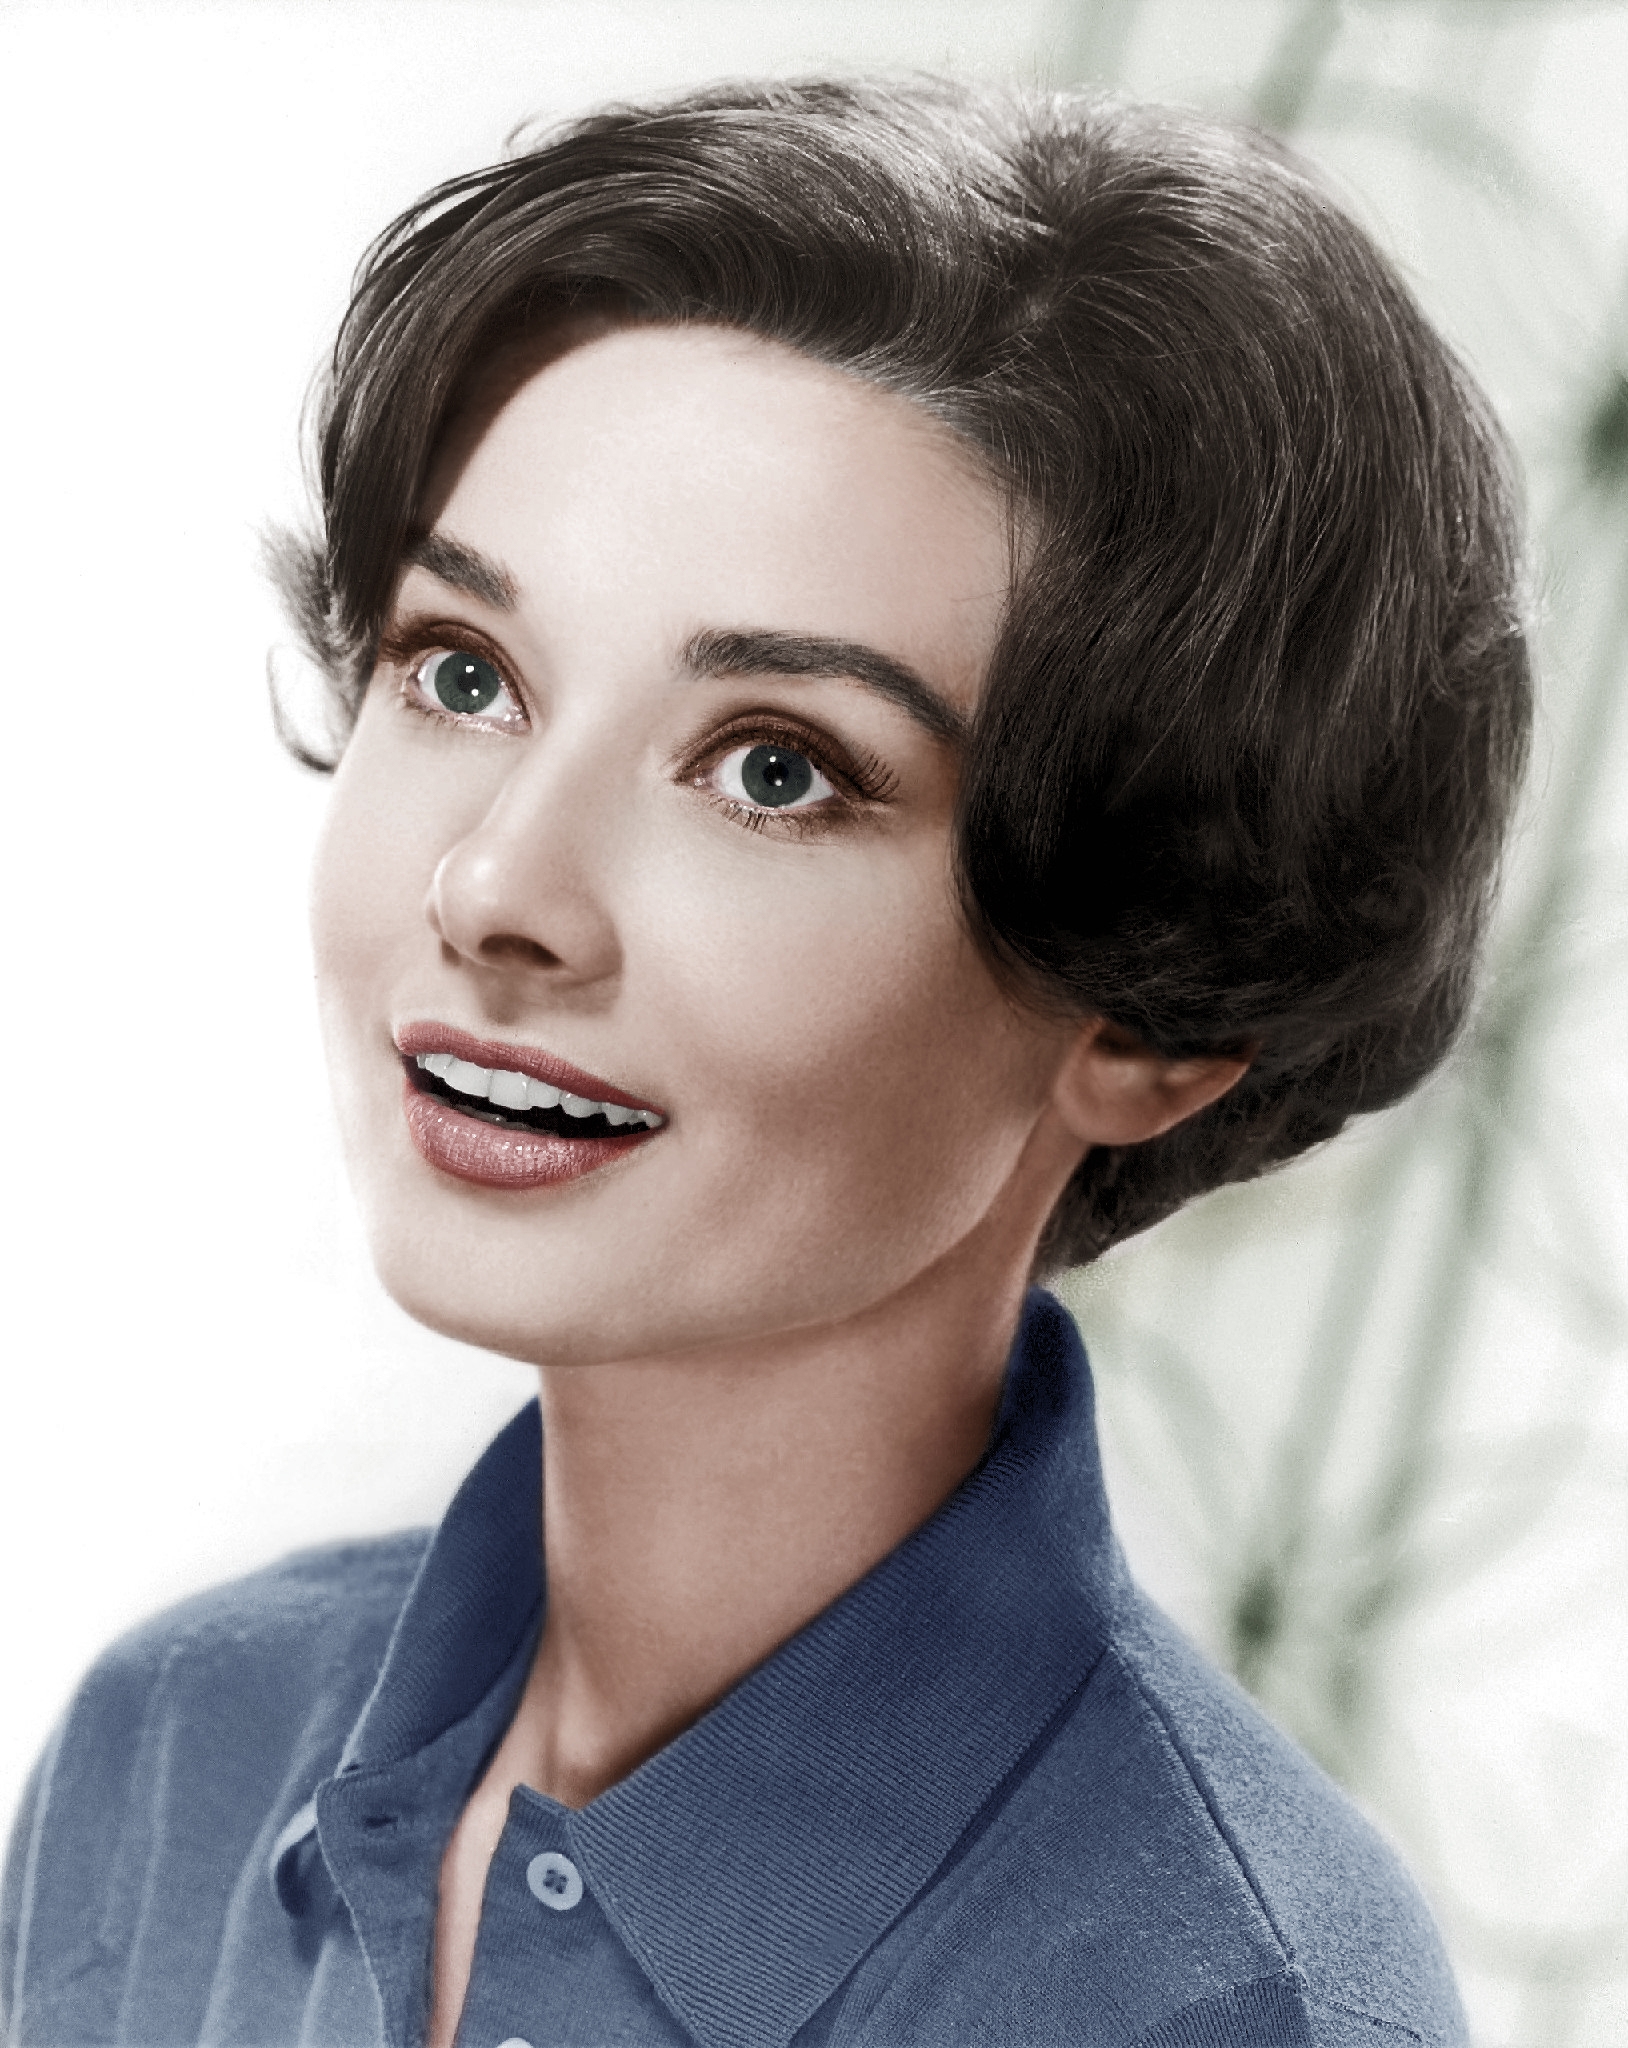 auteur Audrey Hepburn de la citation La vraie beauté dans une femme se reflète dans son âme.